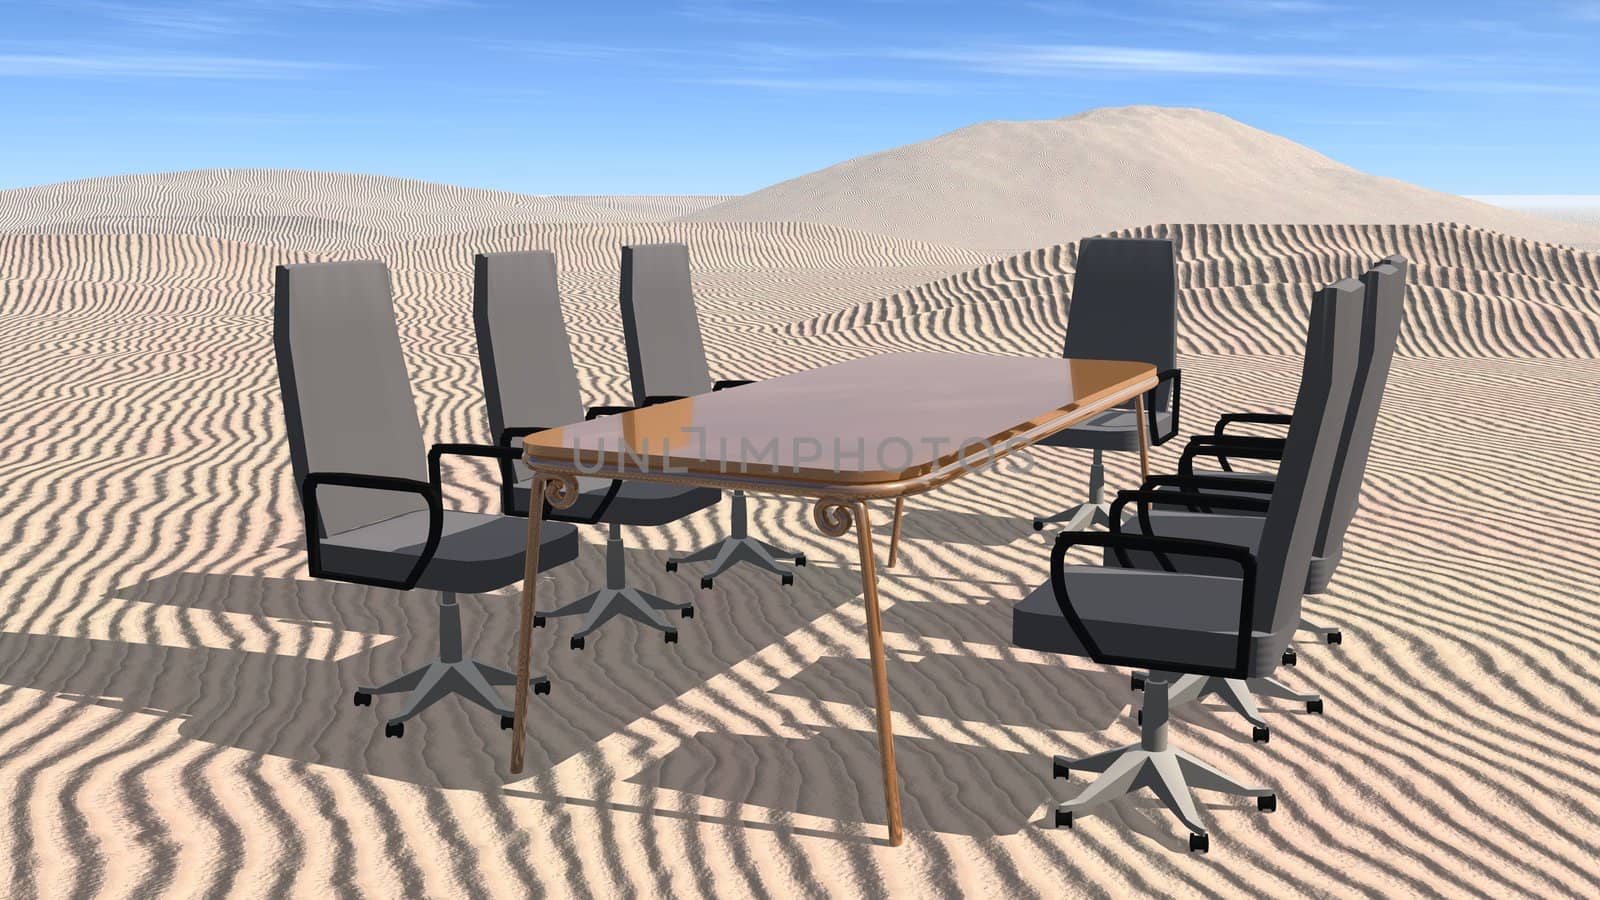 Meeting room in desert by jbouzou